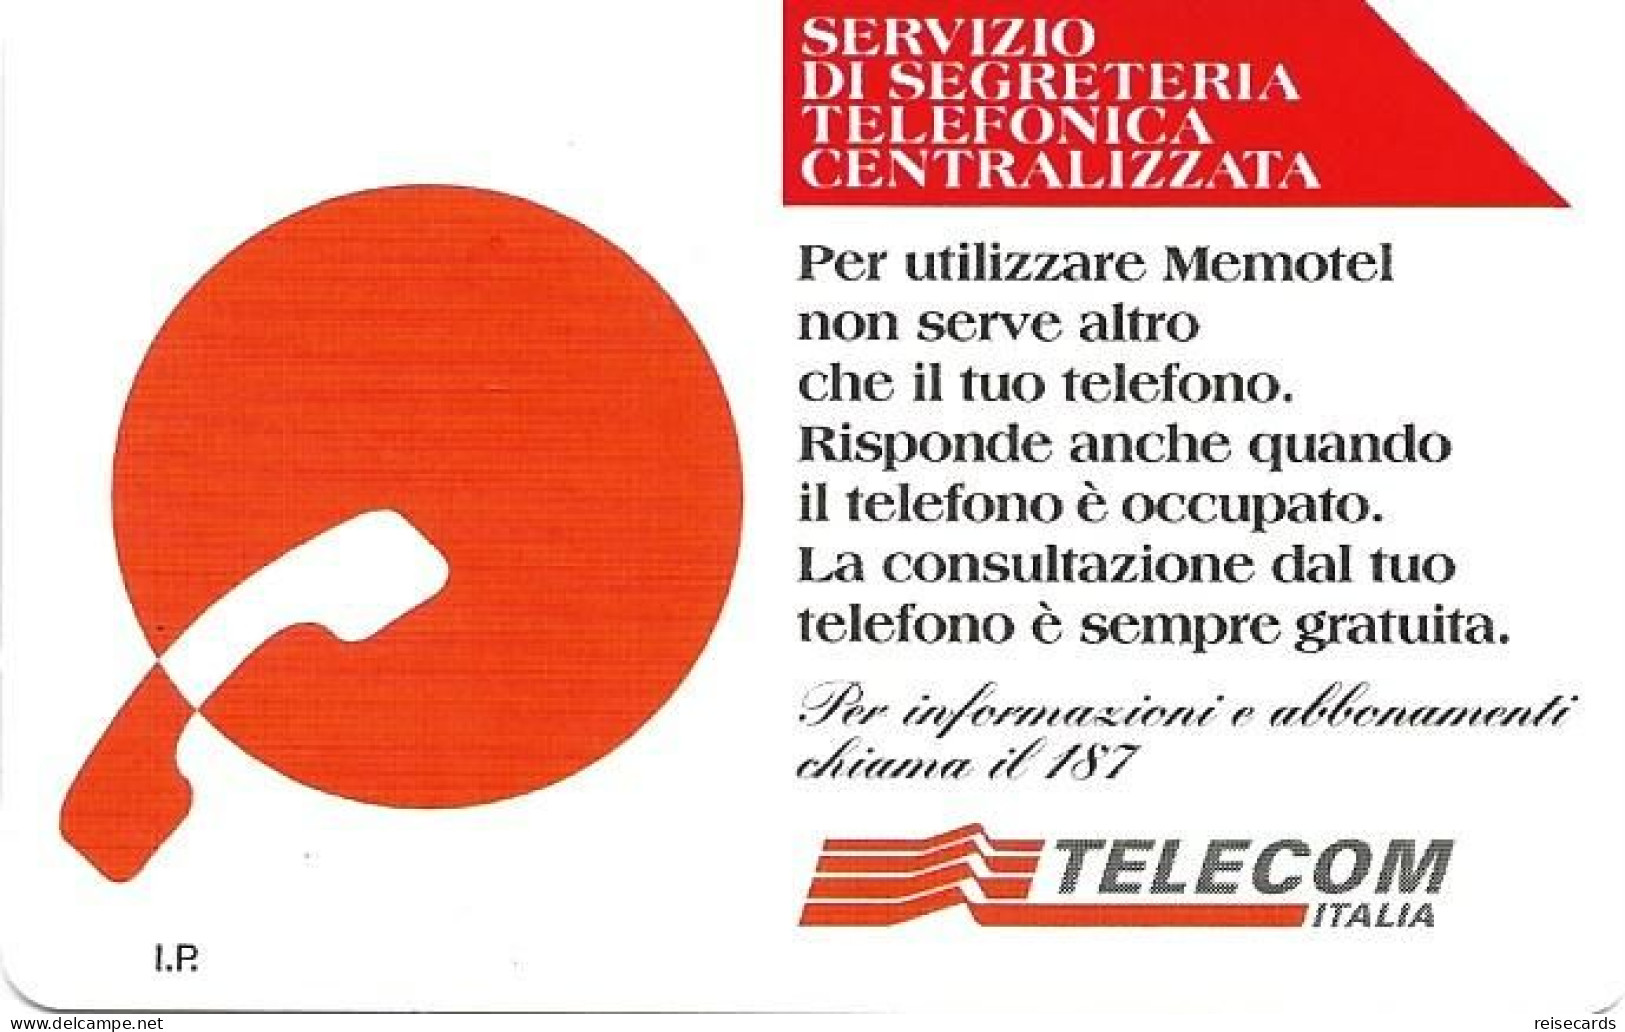 Italy: Telecom Italia - Servizio Di Segreteria Telefonica Centralizzata - Öff. Werbe-TK